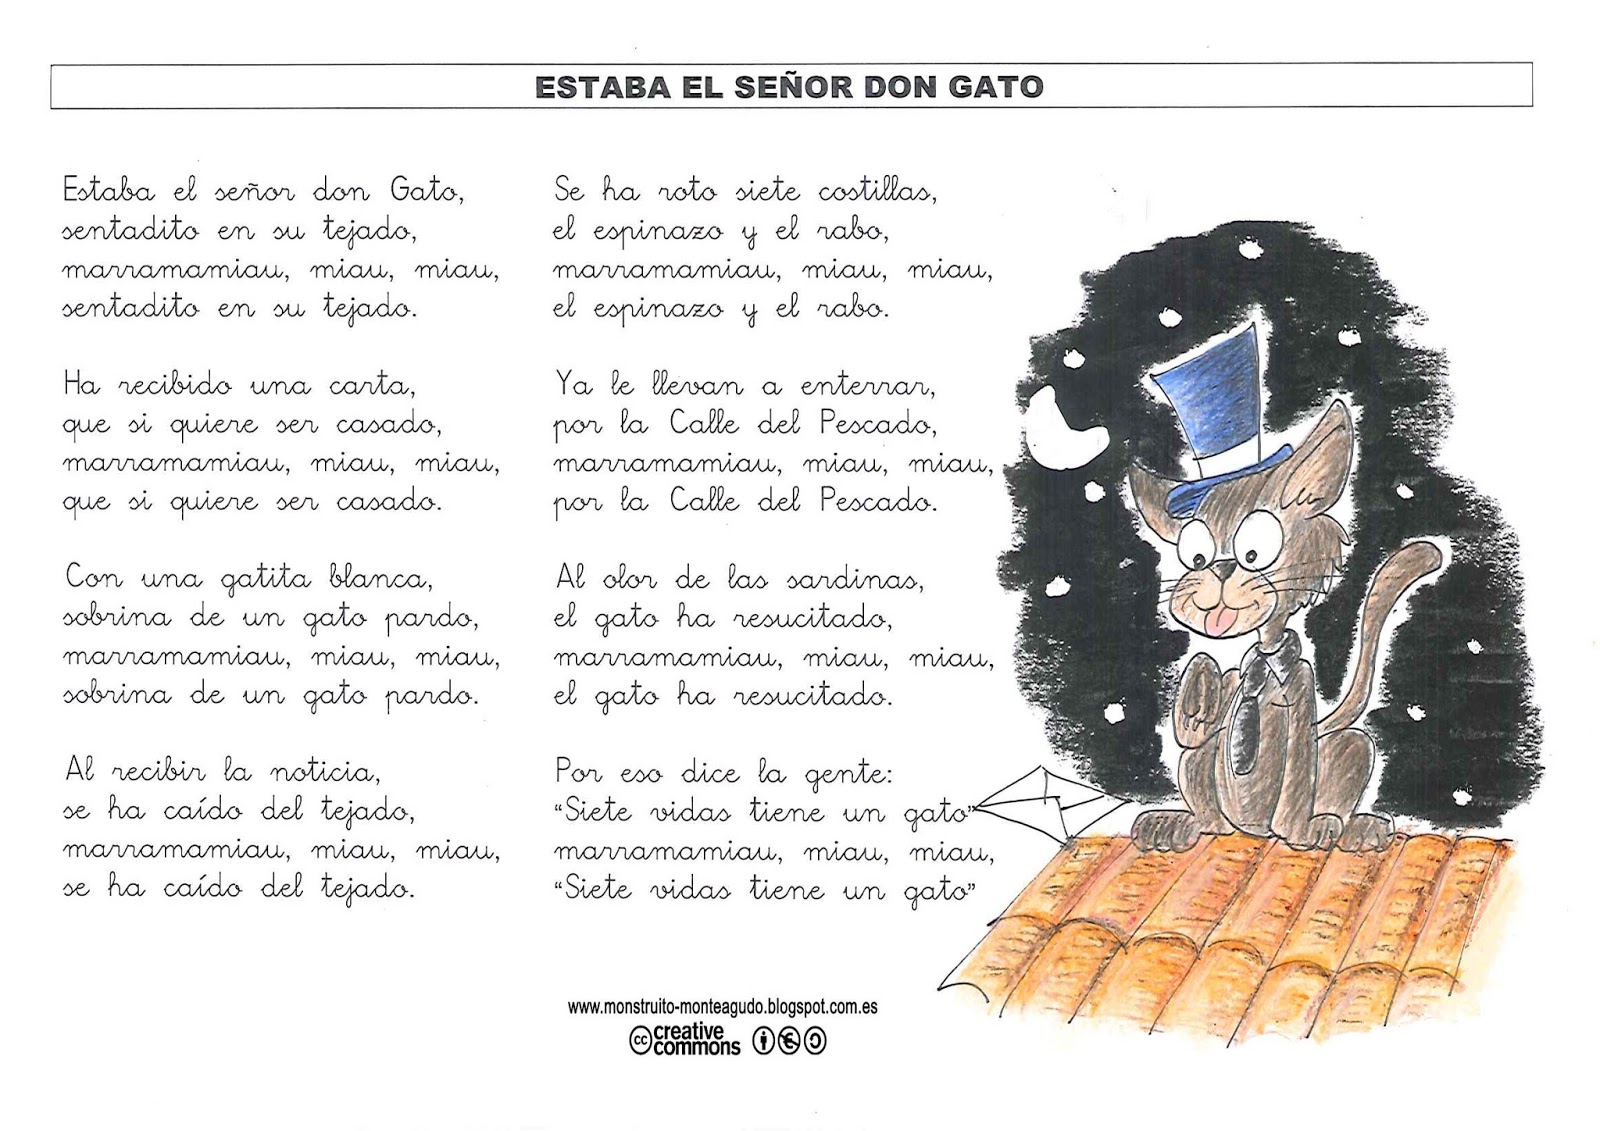 Reparación posible Arábica Cuerpo El Monstruito en Monteagudo: Canción: Estaba el señor don Gato.